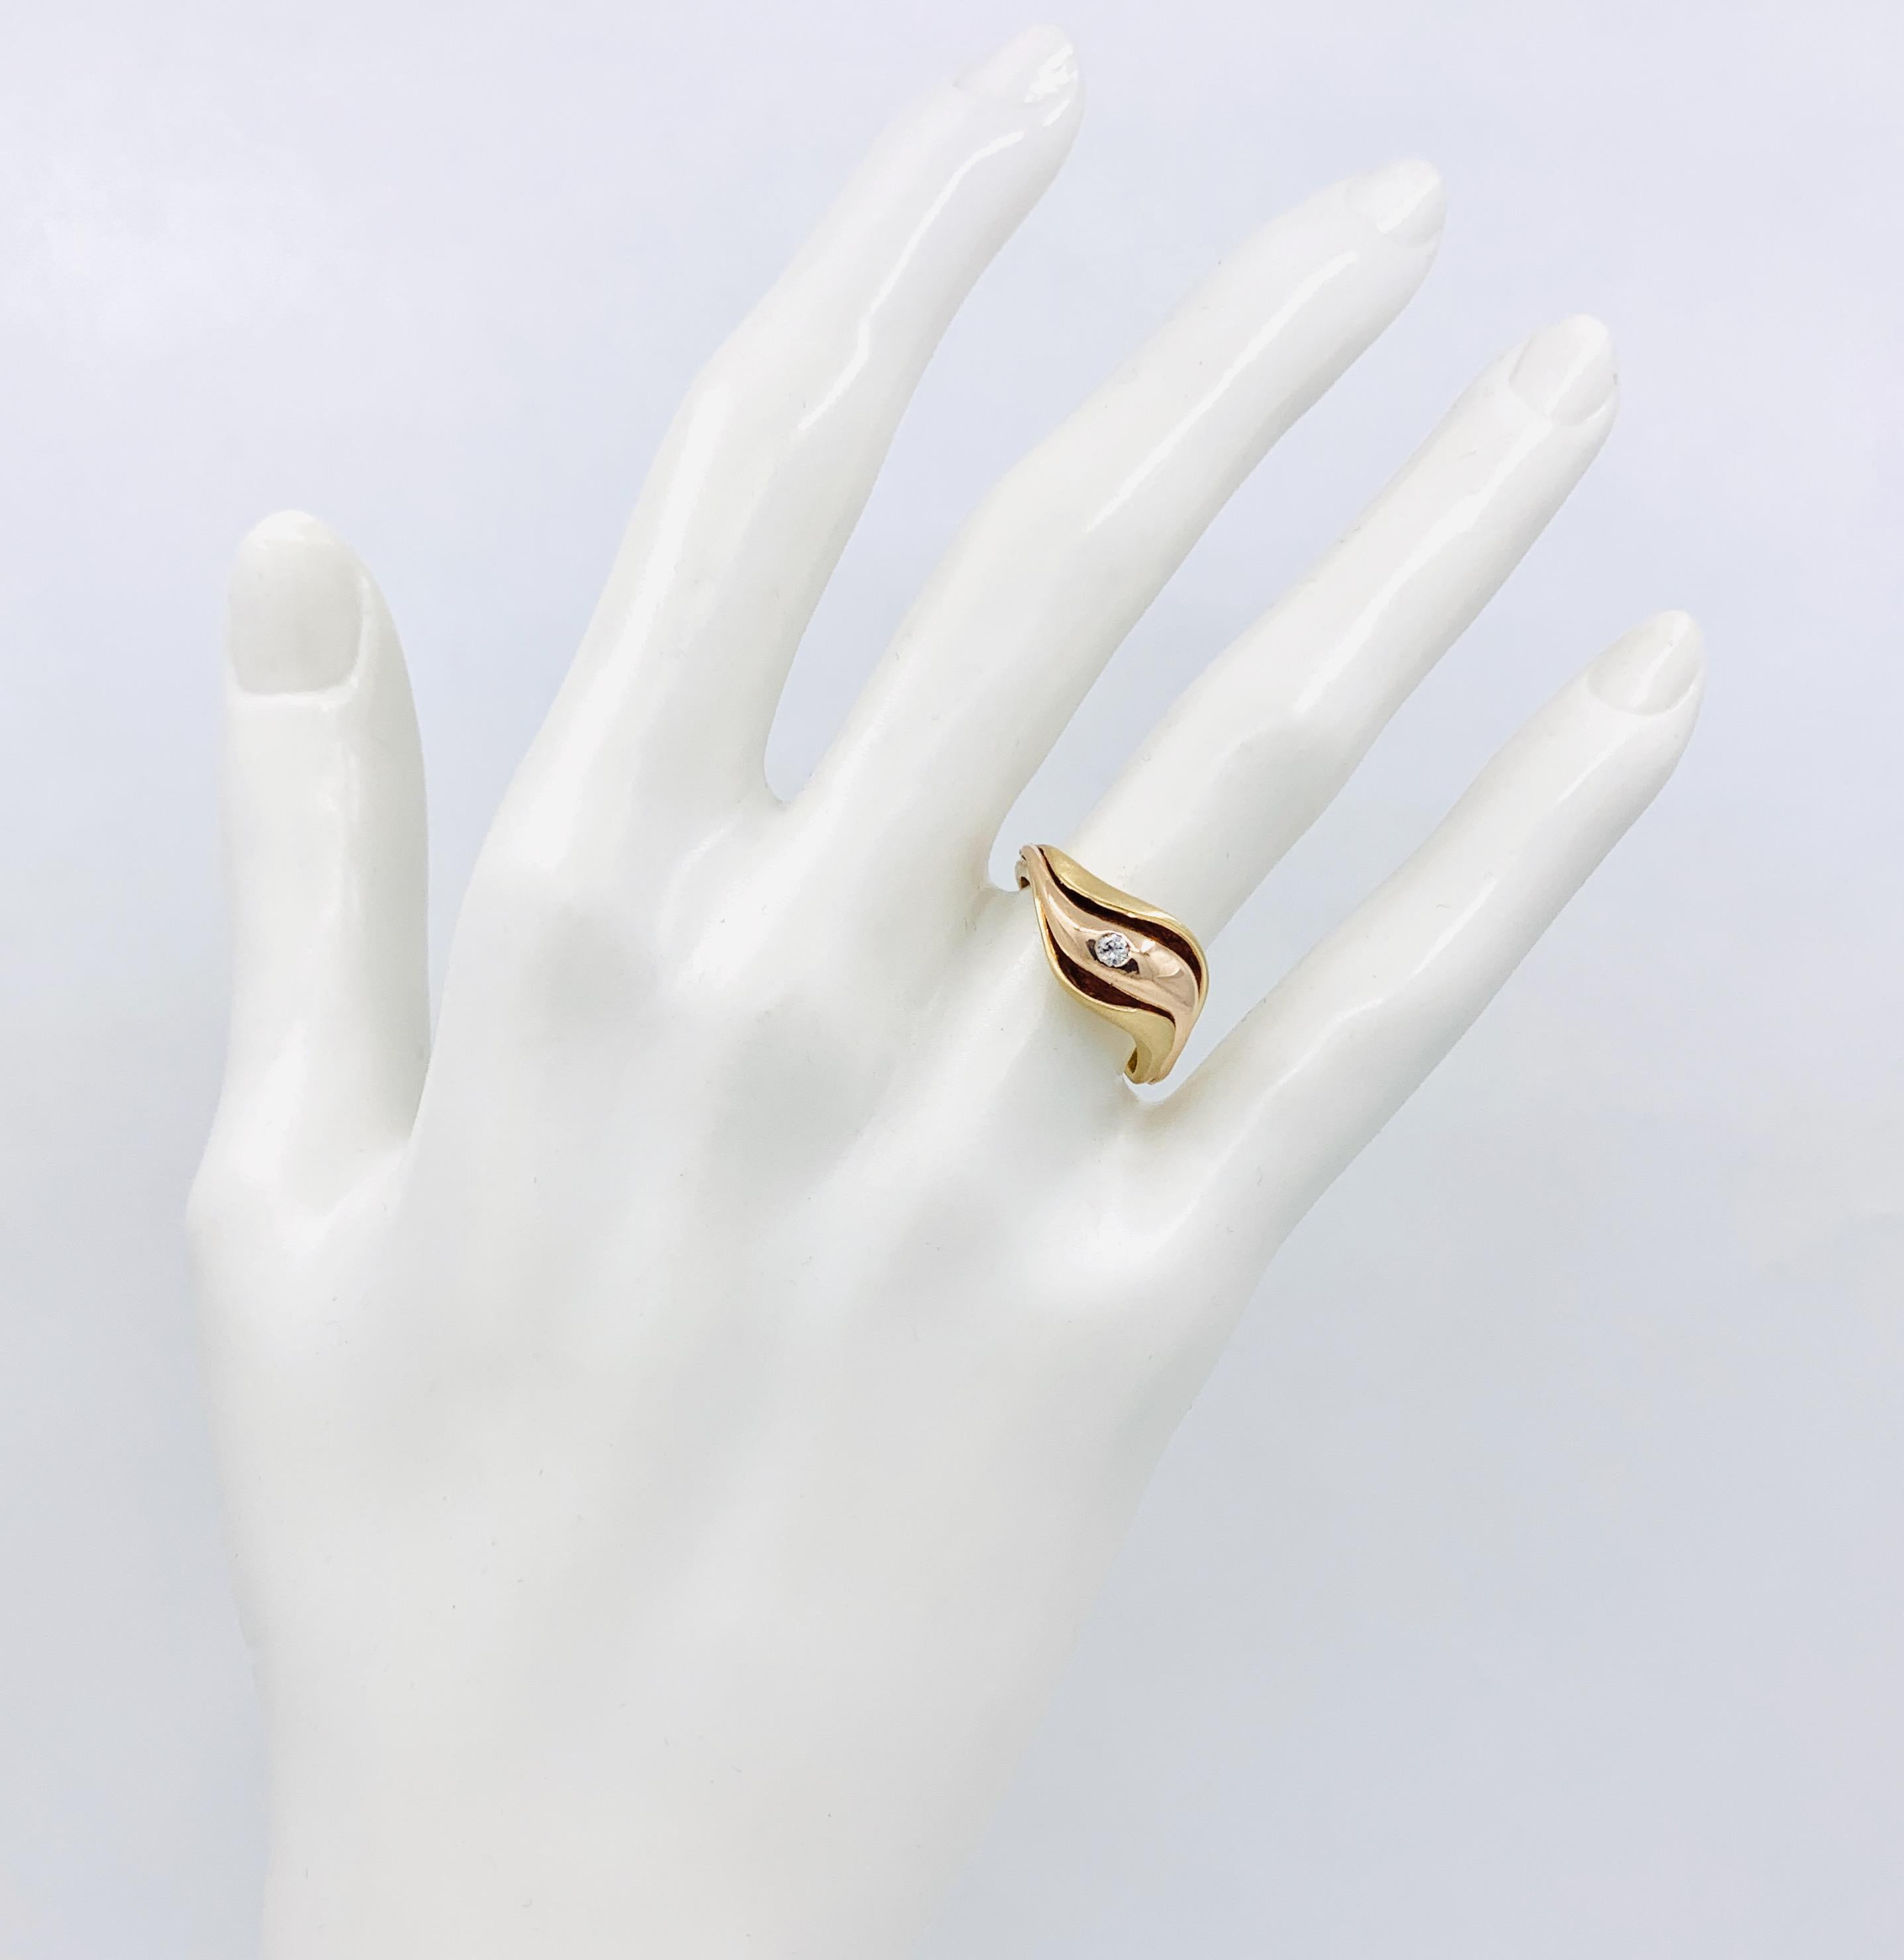 Dieser wunderschöne und sexy Ring von Eytan Brandes ist ein frei geformter Schlenker aus satiniertem, gebürstetem Gelbgold, der sich vorne anmutig öffnet und eine polierte Ranke aus Roségold enthüllt.  Ein 0,06-Karat-Diamant in Hammerschlagfassung